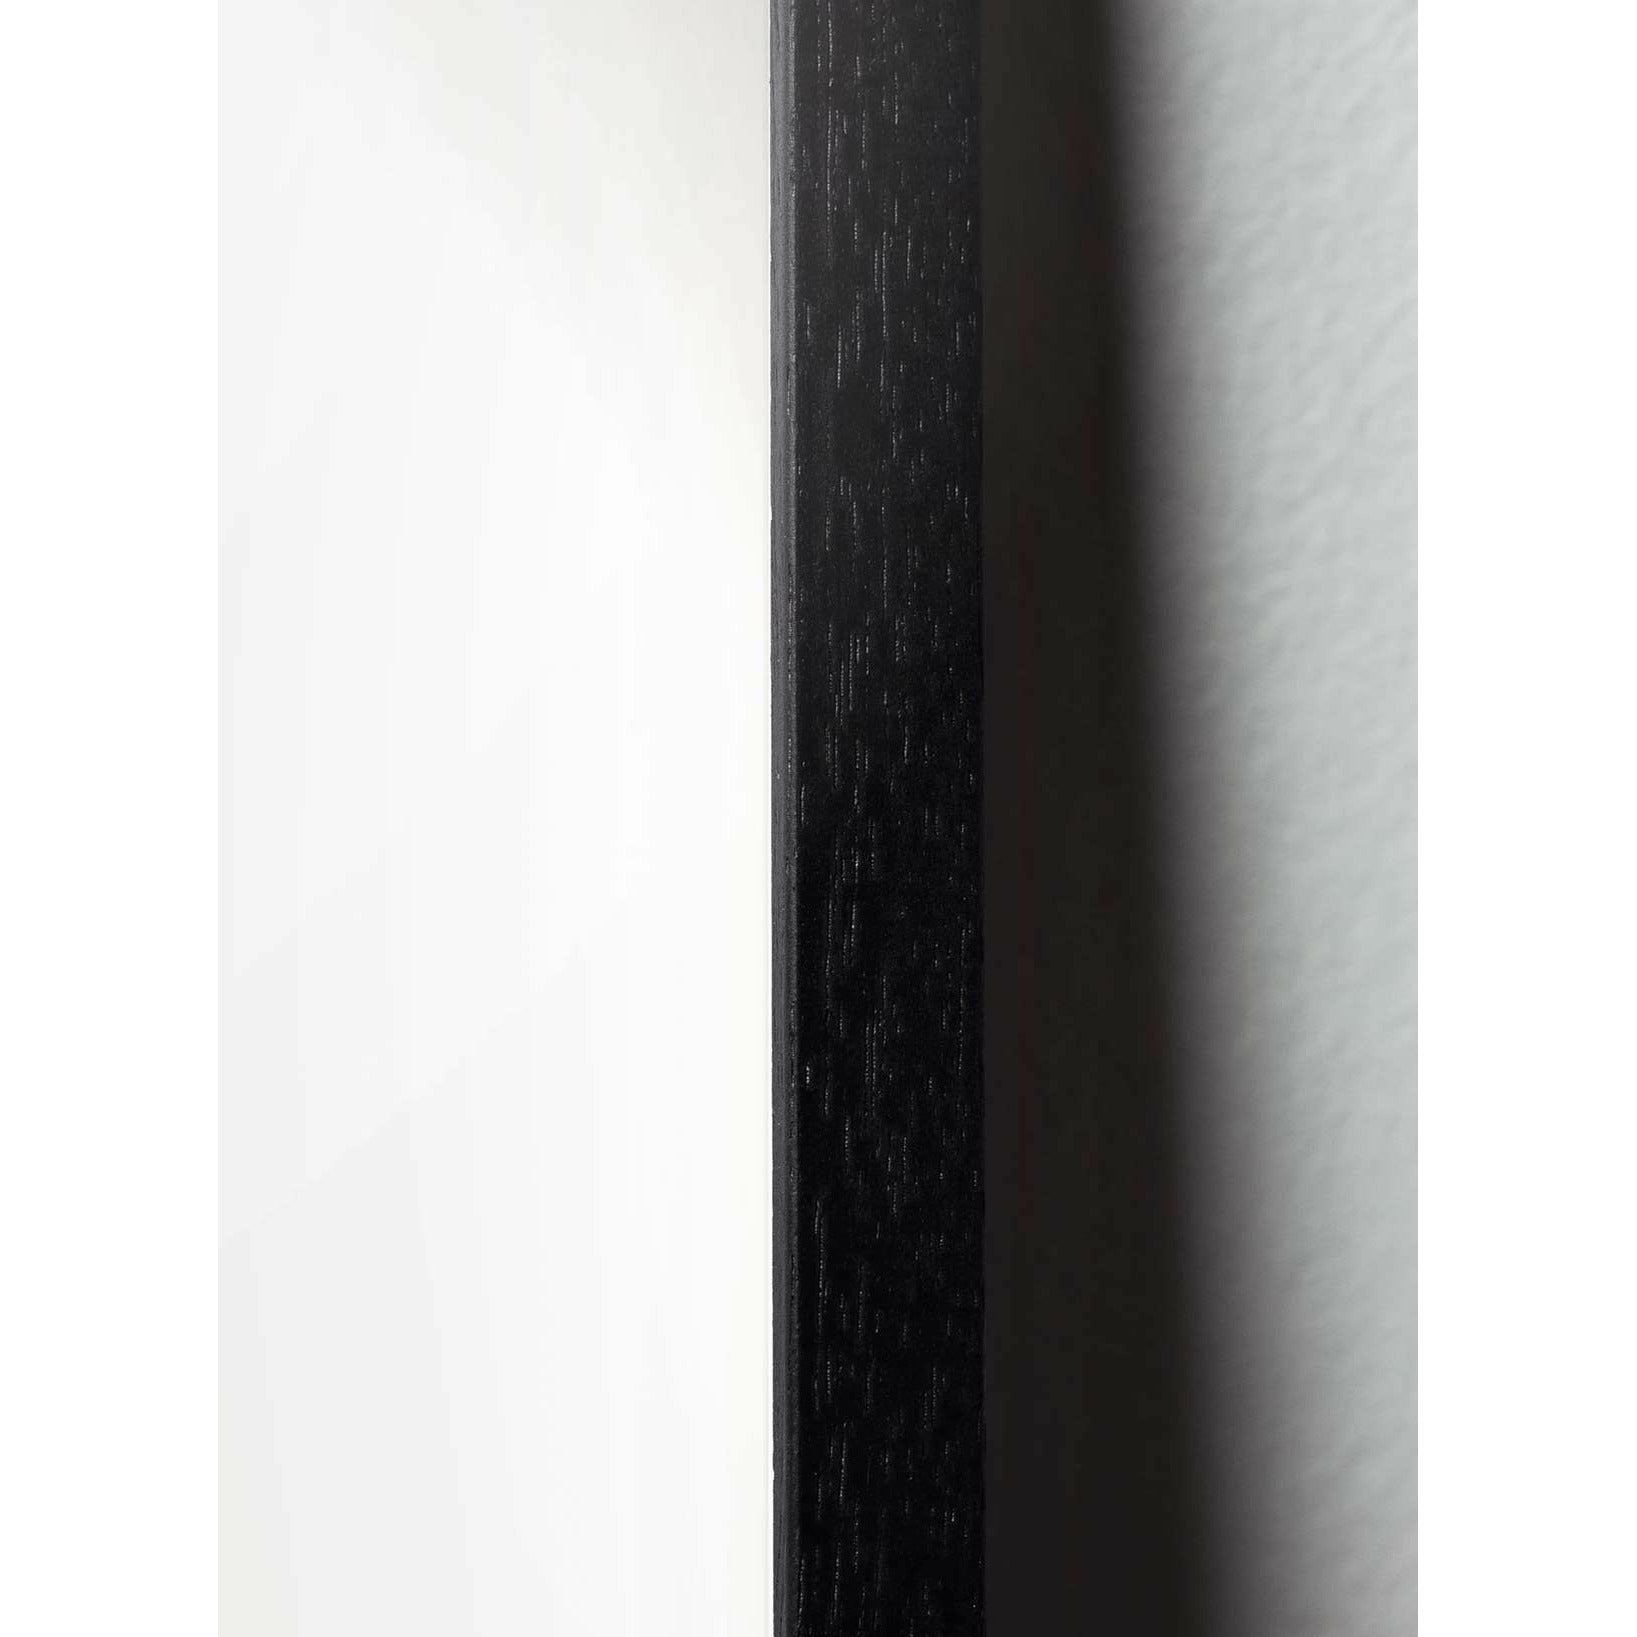 Póster clásico de cono de pino de creación, marco en madera lacada negra 50x70 cm, fondo azul oscuro